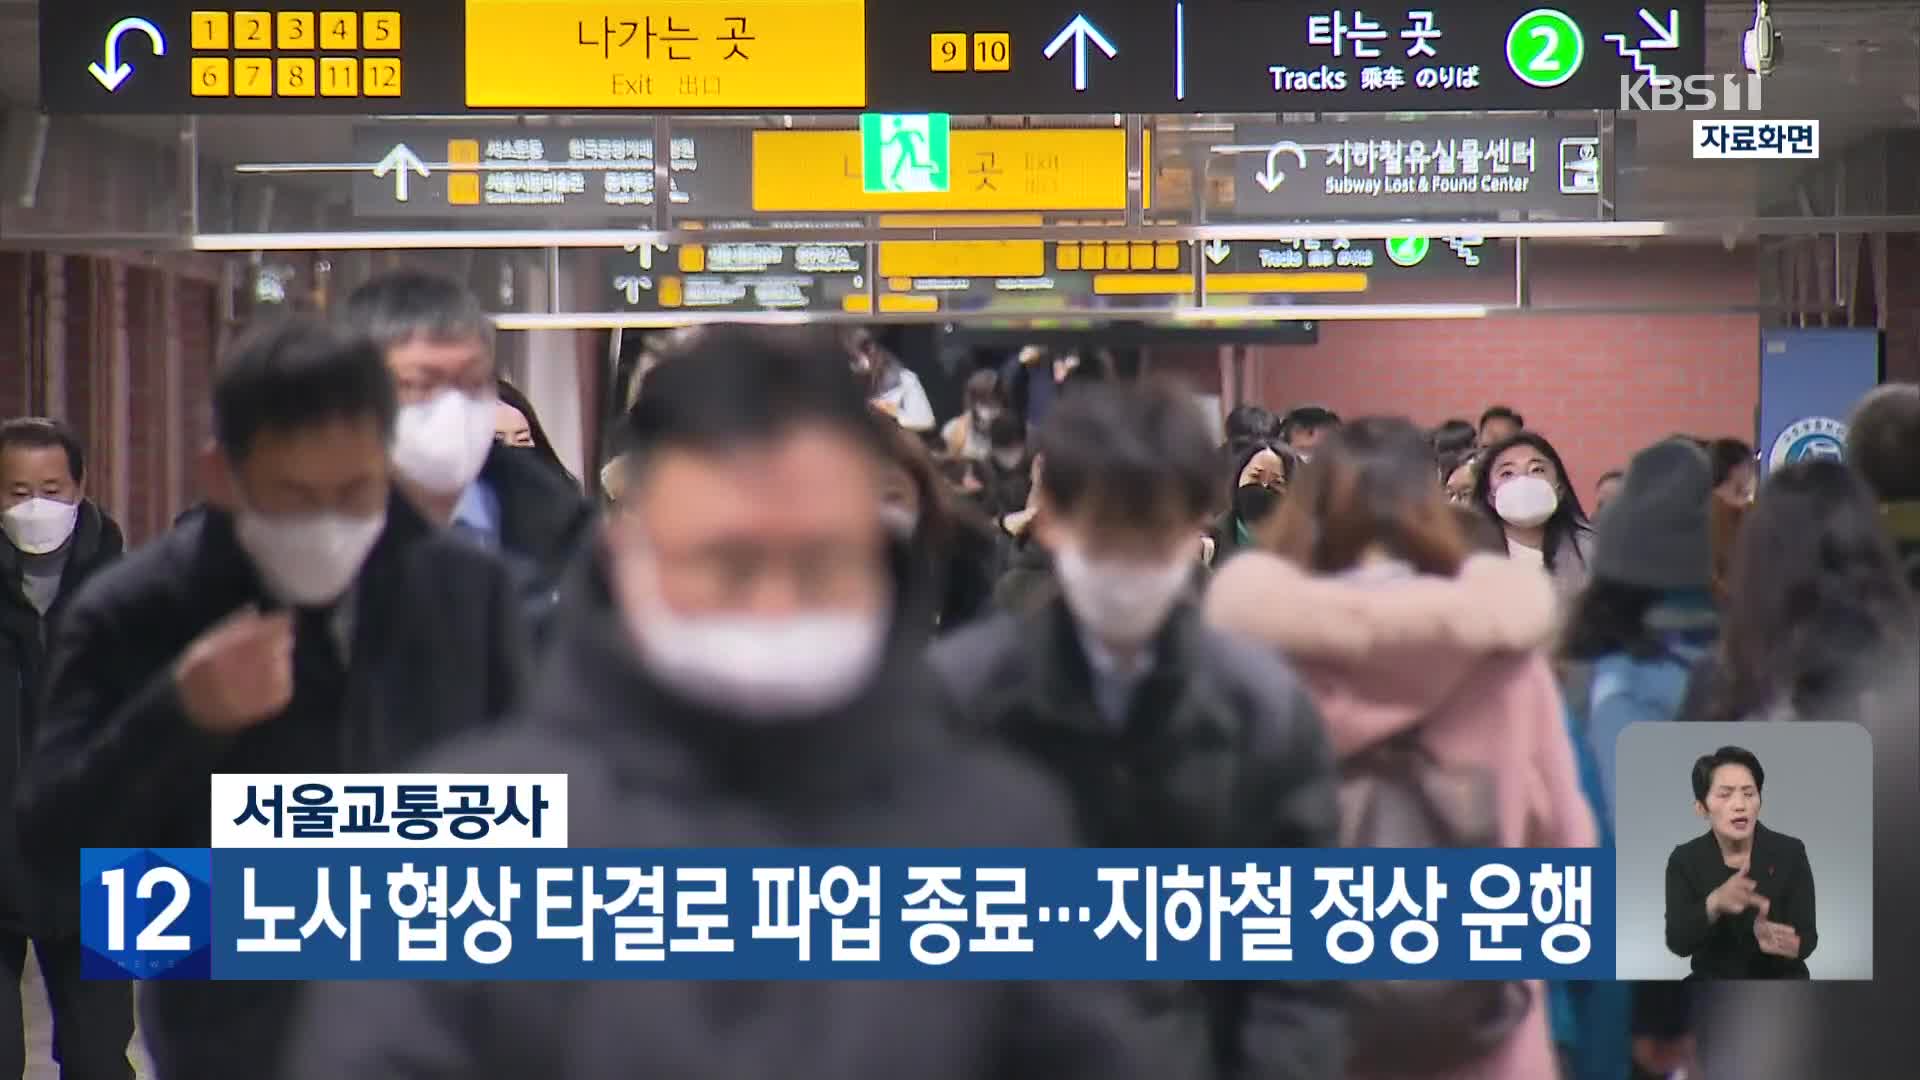 서울교통공사, 노사 협상 타결로 파업 종료…지하철 정상 운행